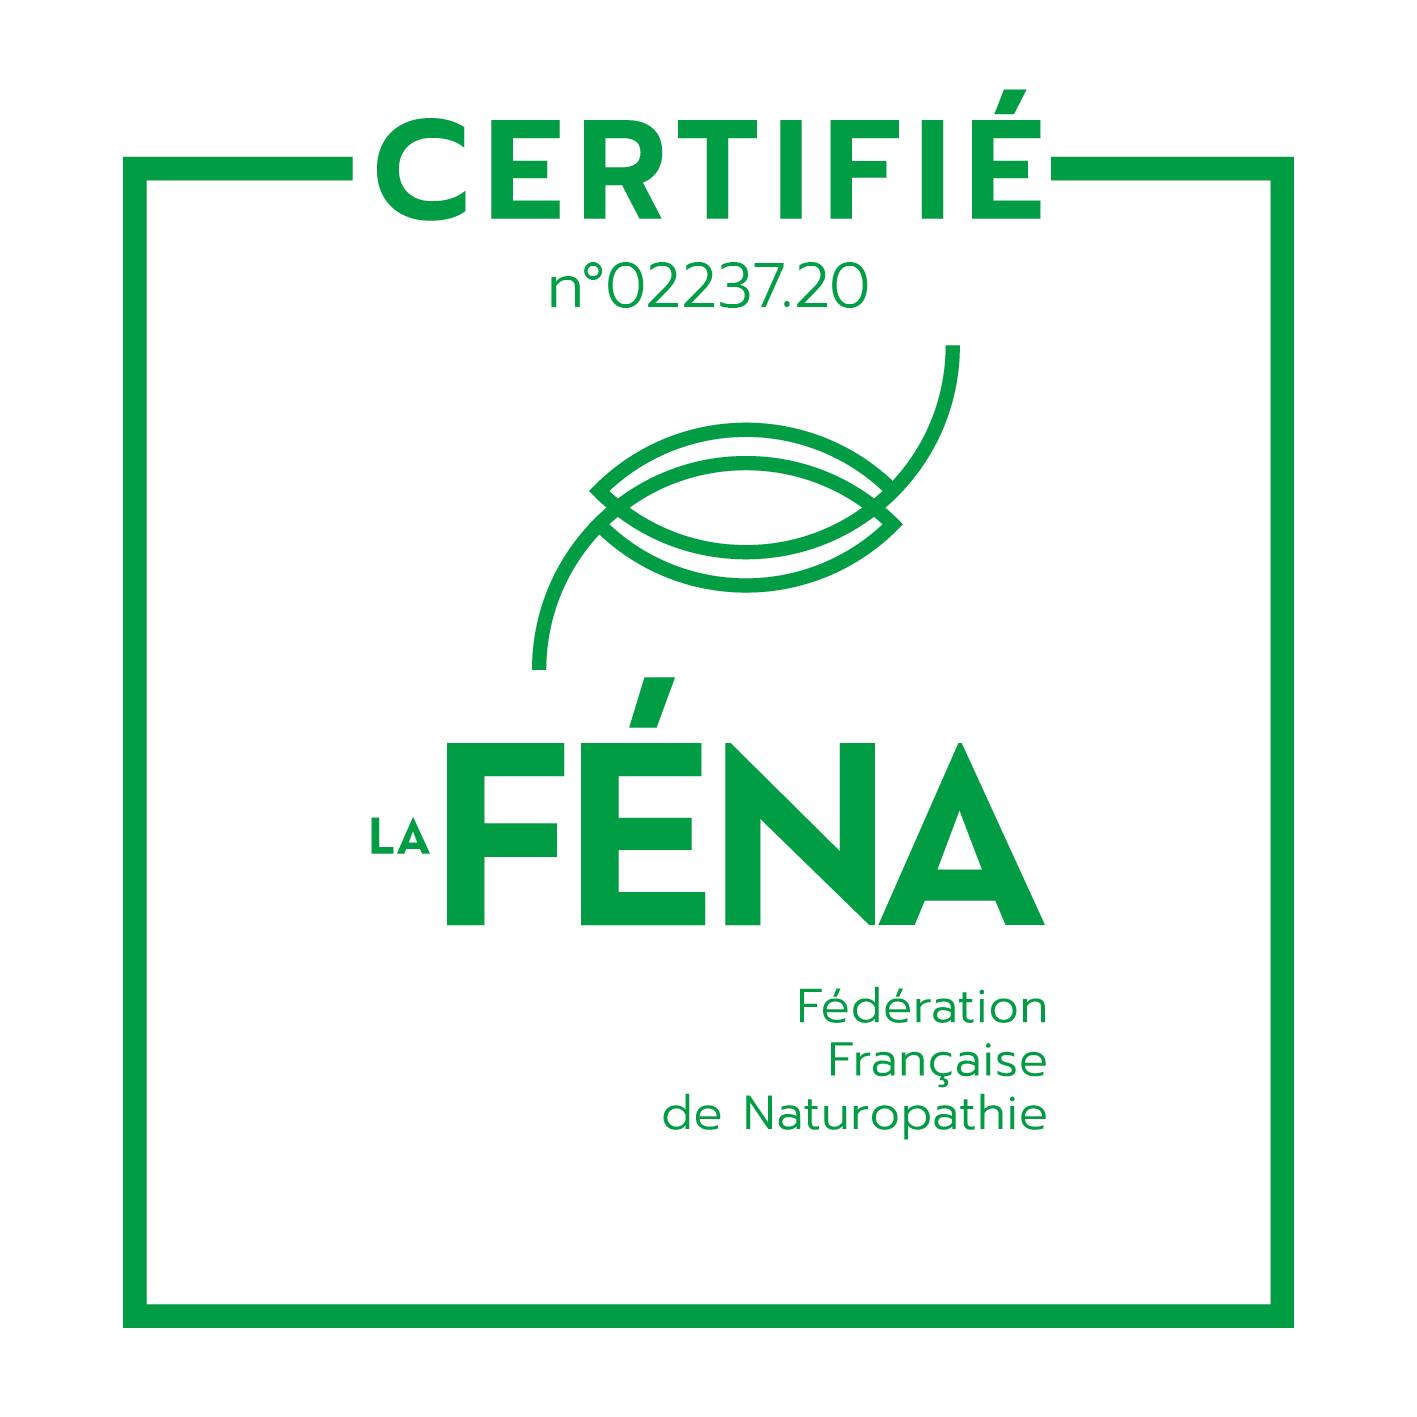 Certifiée n°02237.20 de la Fédération Française de Naturopathie